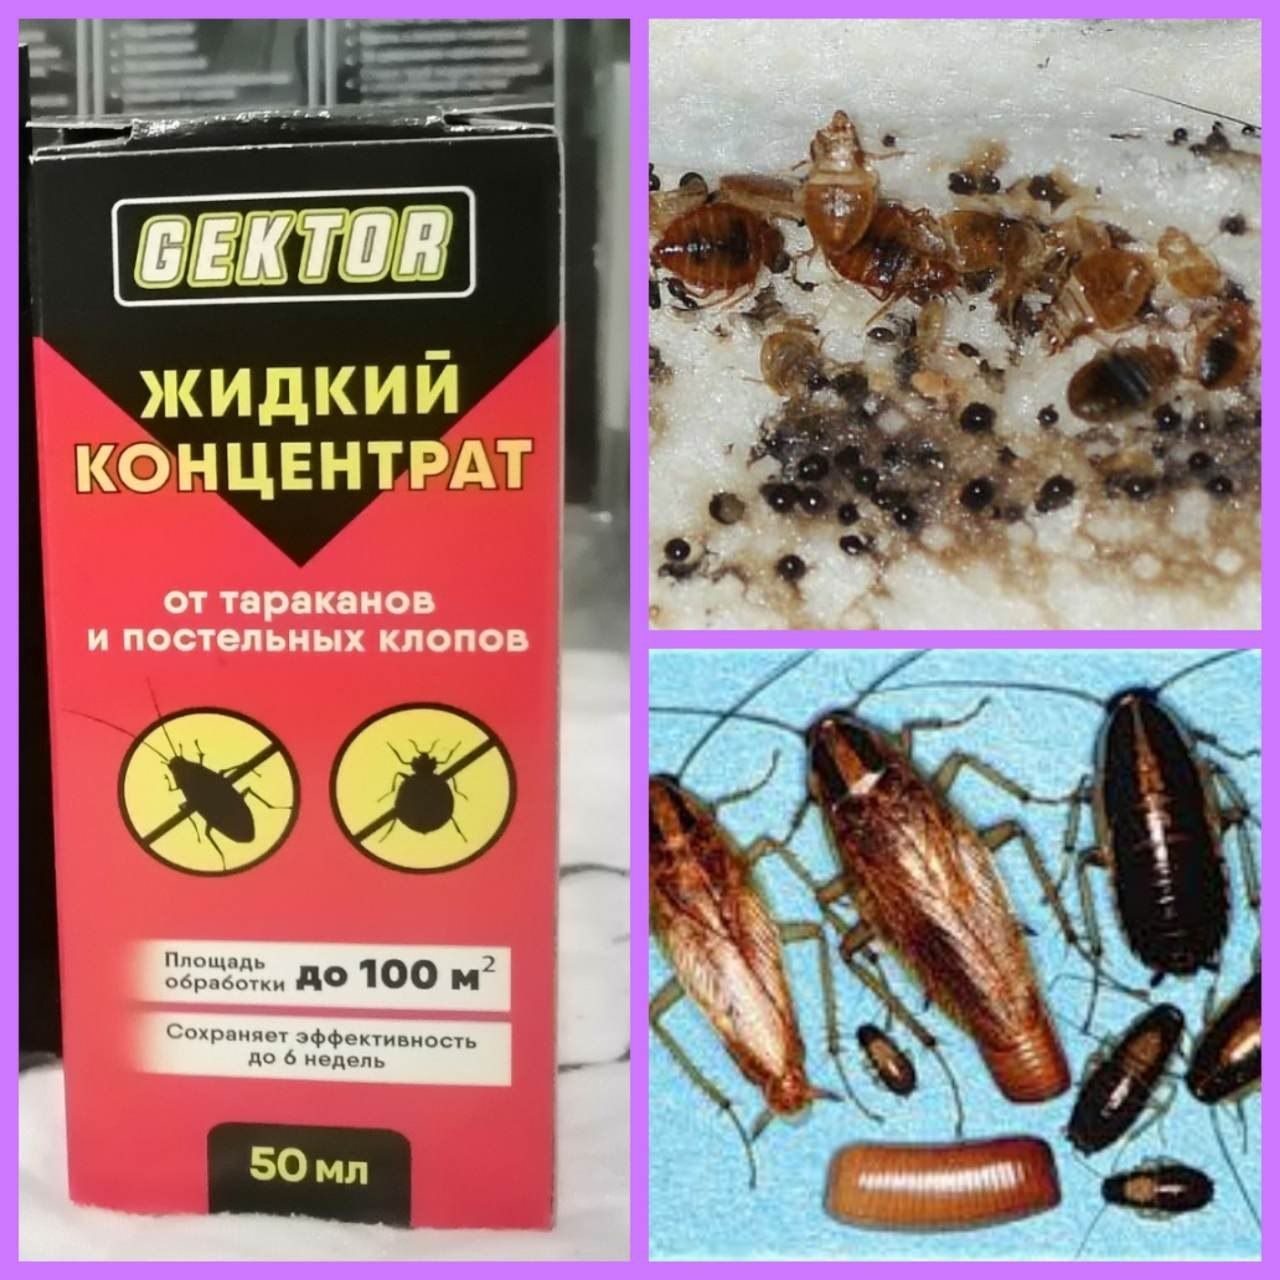 Гектор /Gektor/ концетрат отрава от клопов тараканов насекомых средств